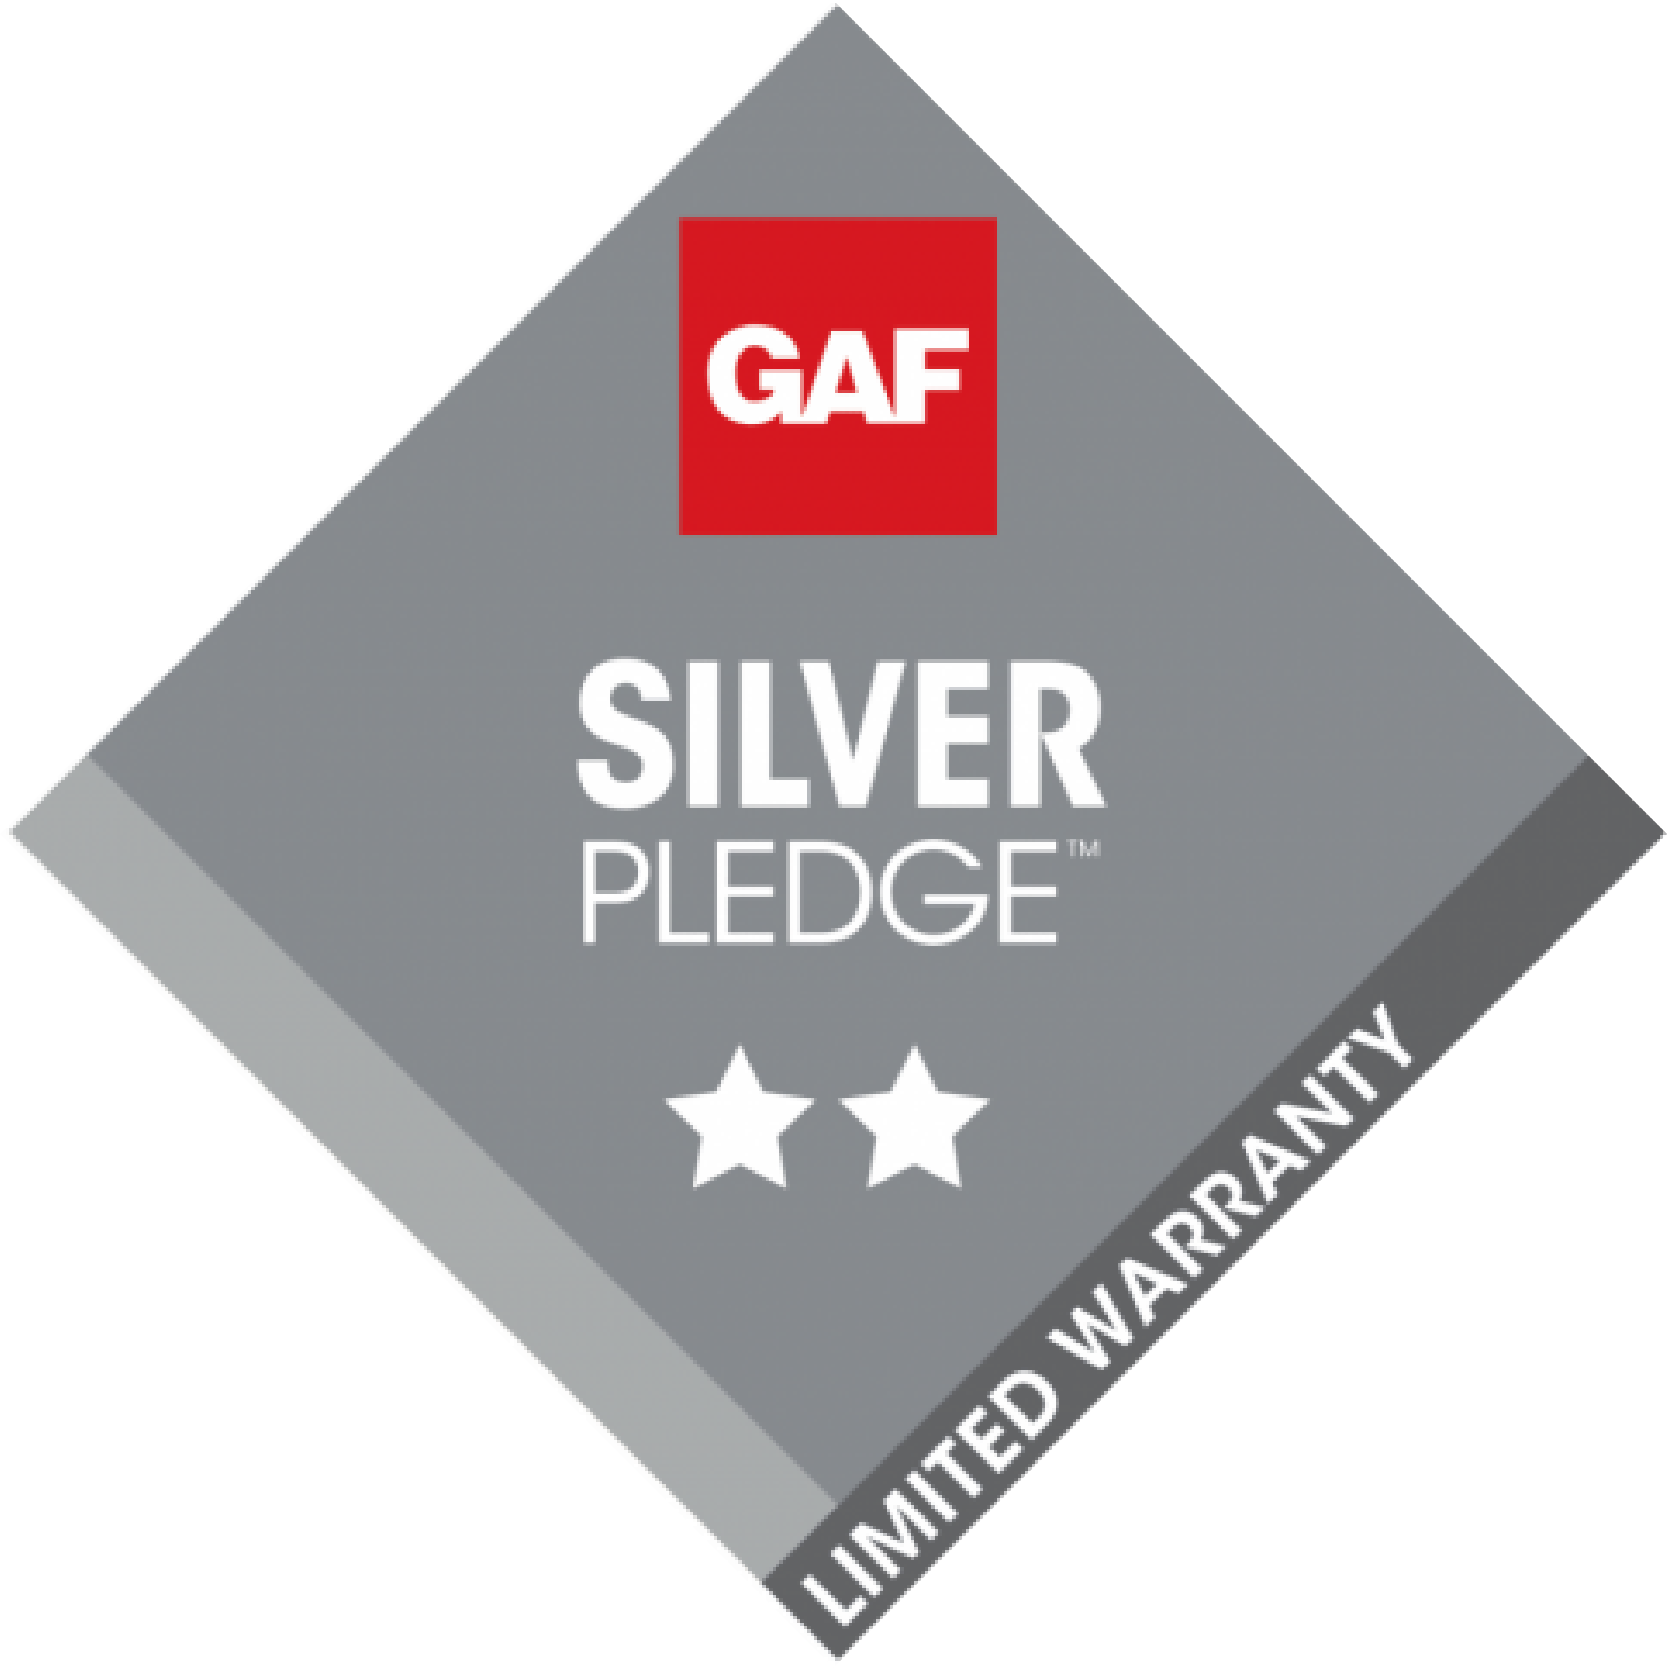 GAF Silver Pledge Roof Warranty Seal